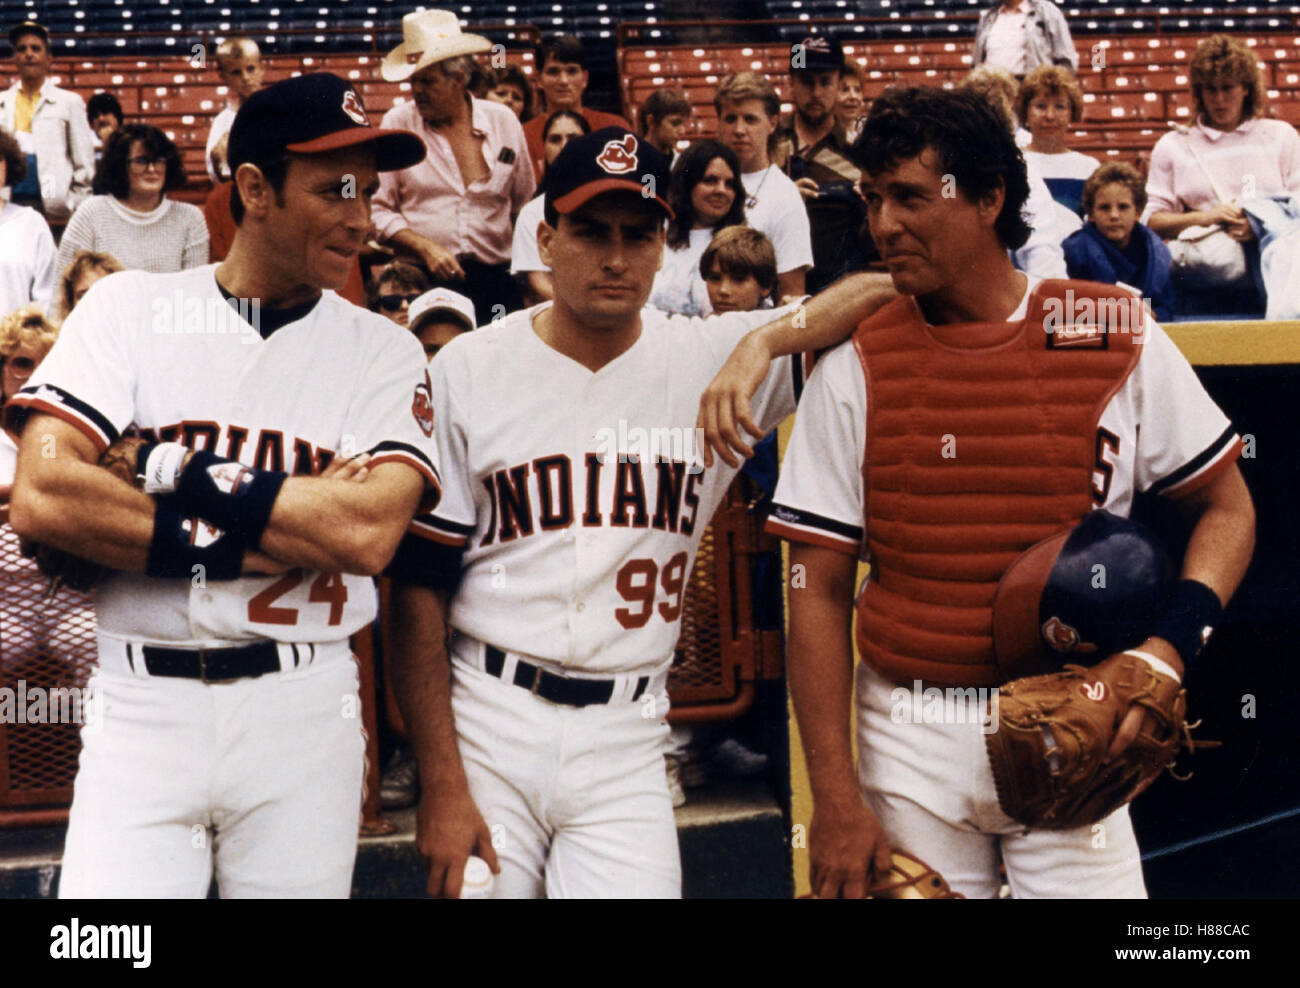 Die Indianer von Cleveland, (MAJOR LEAGUE) USA 1989, Regie: David S. Ward, CORBIN BERNSEN, Charlie Sheen, TOM BERENGER, Stichwort: Baseball, Spieler, Team Foto Stock